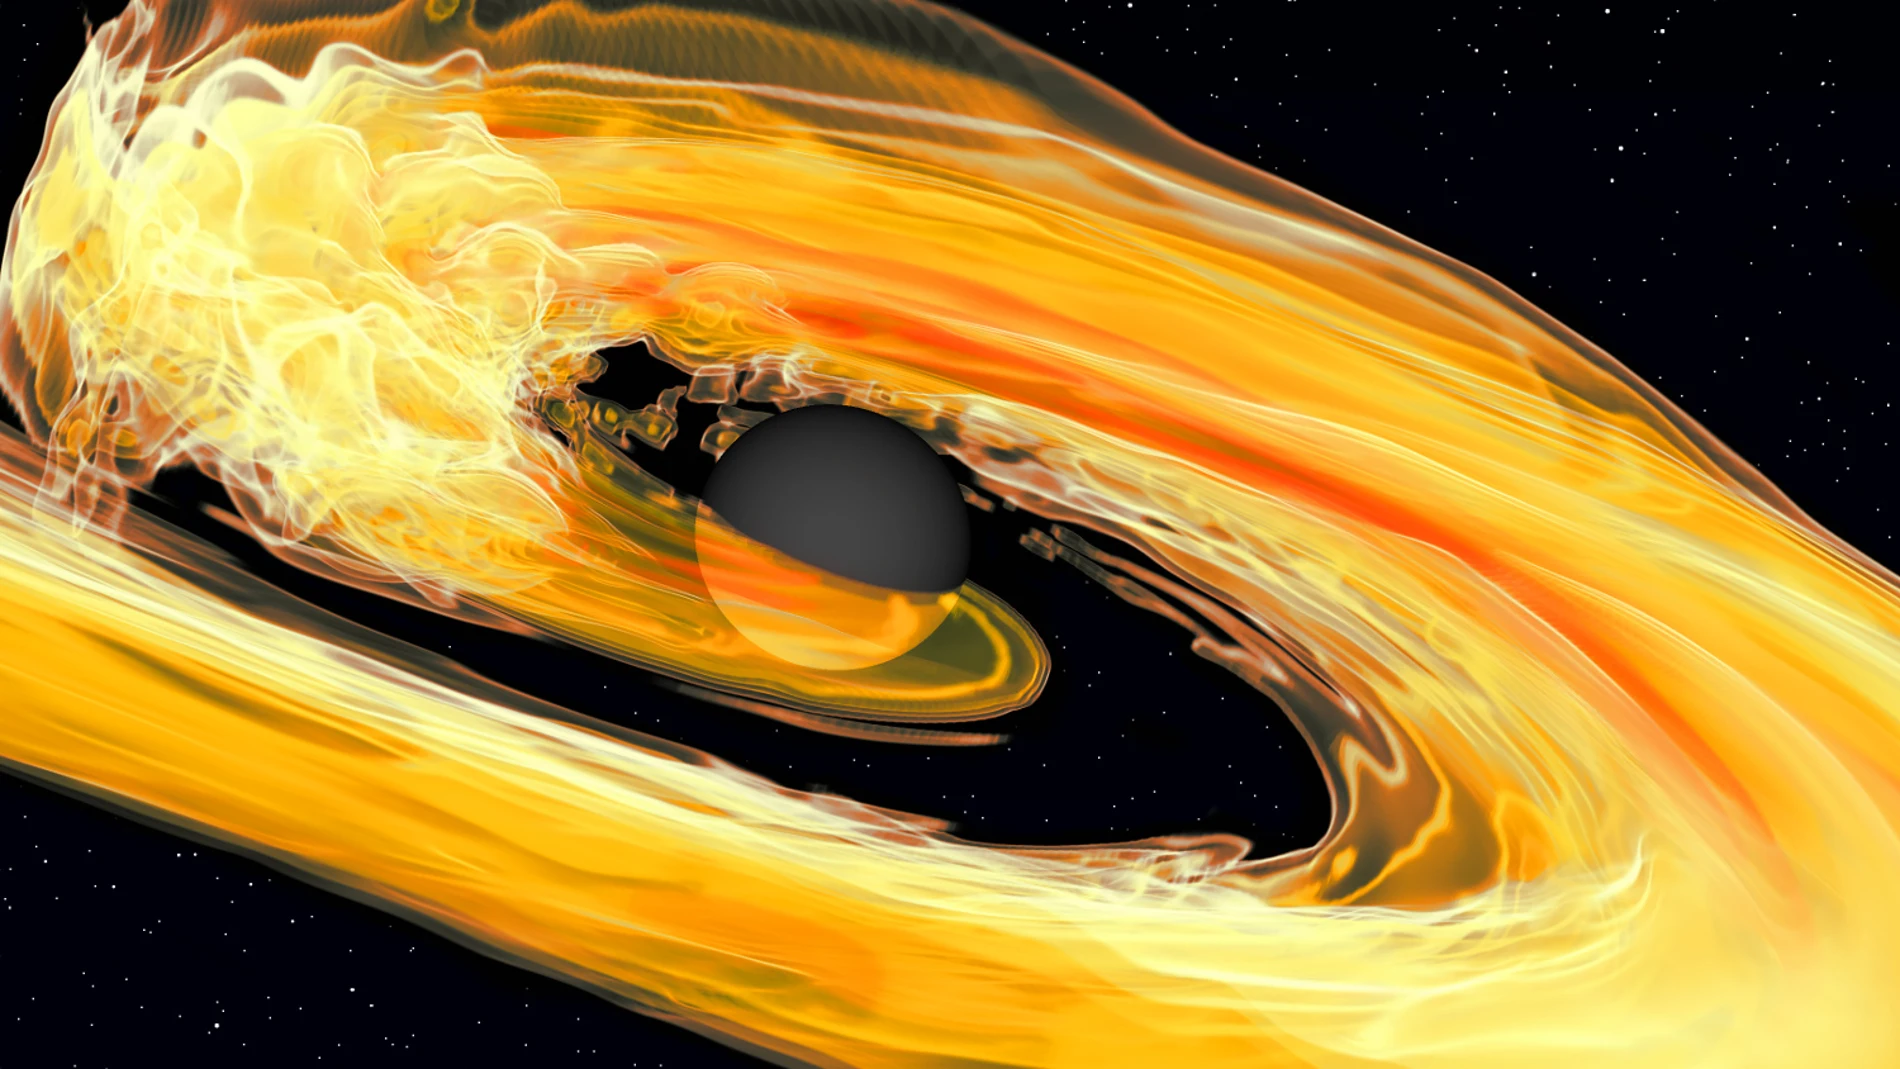 Simulación por ordenador de un agujero negro engullendo una estrella de neutrones.